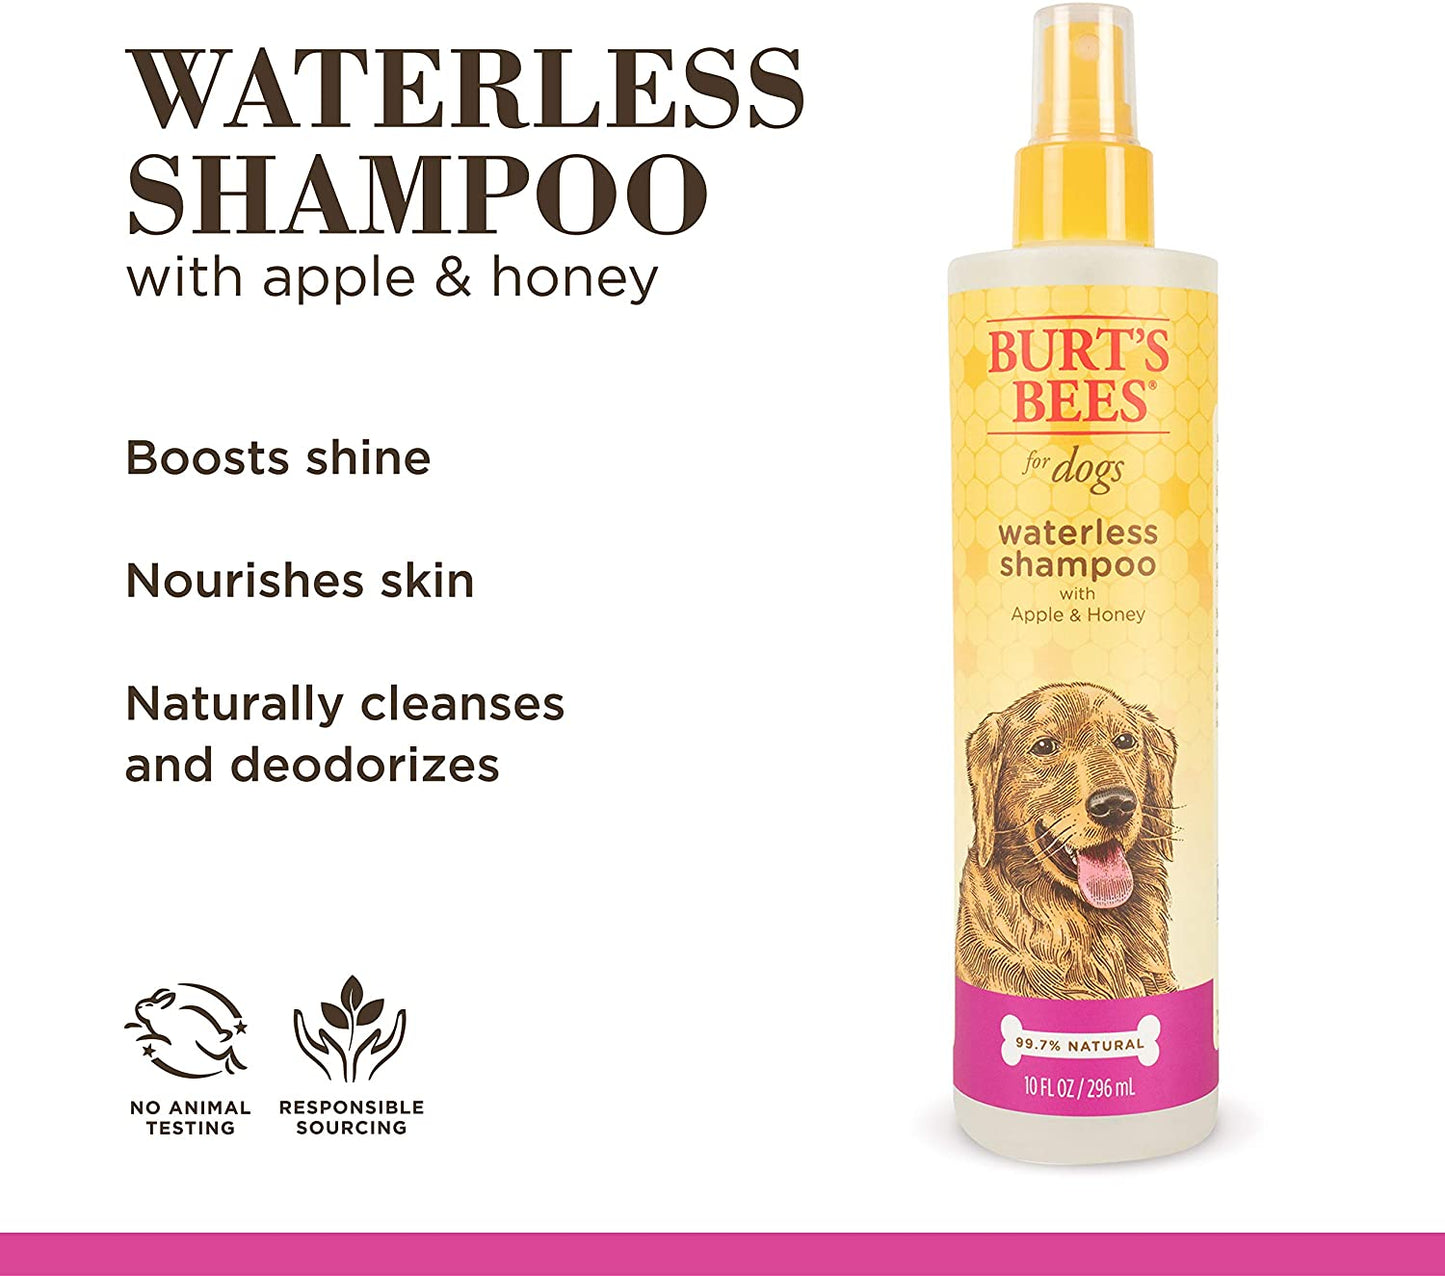 Burts Bees Shampoo En Spray Con Manzana Y Miel Para Perro